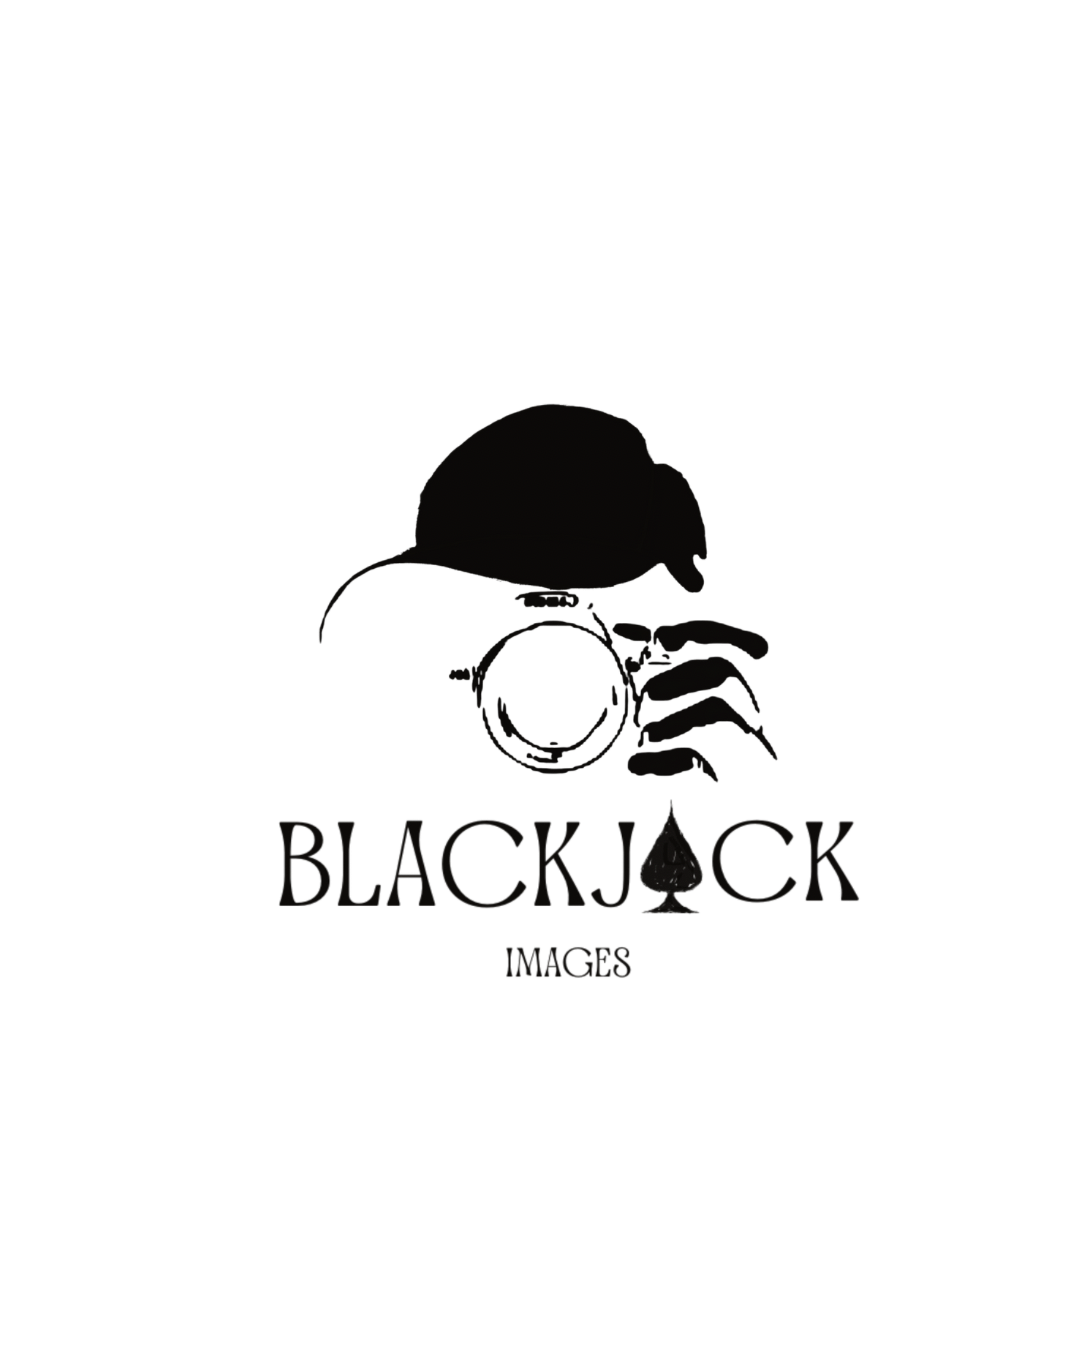 Black Jack Images